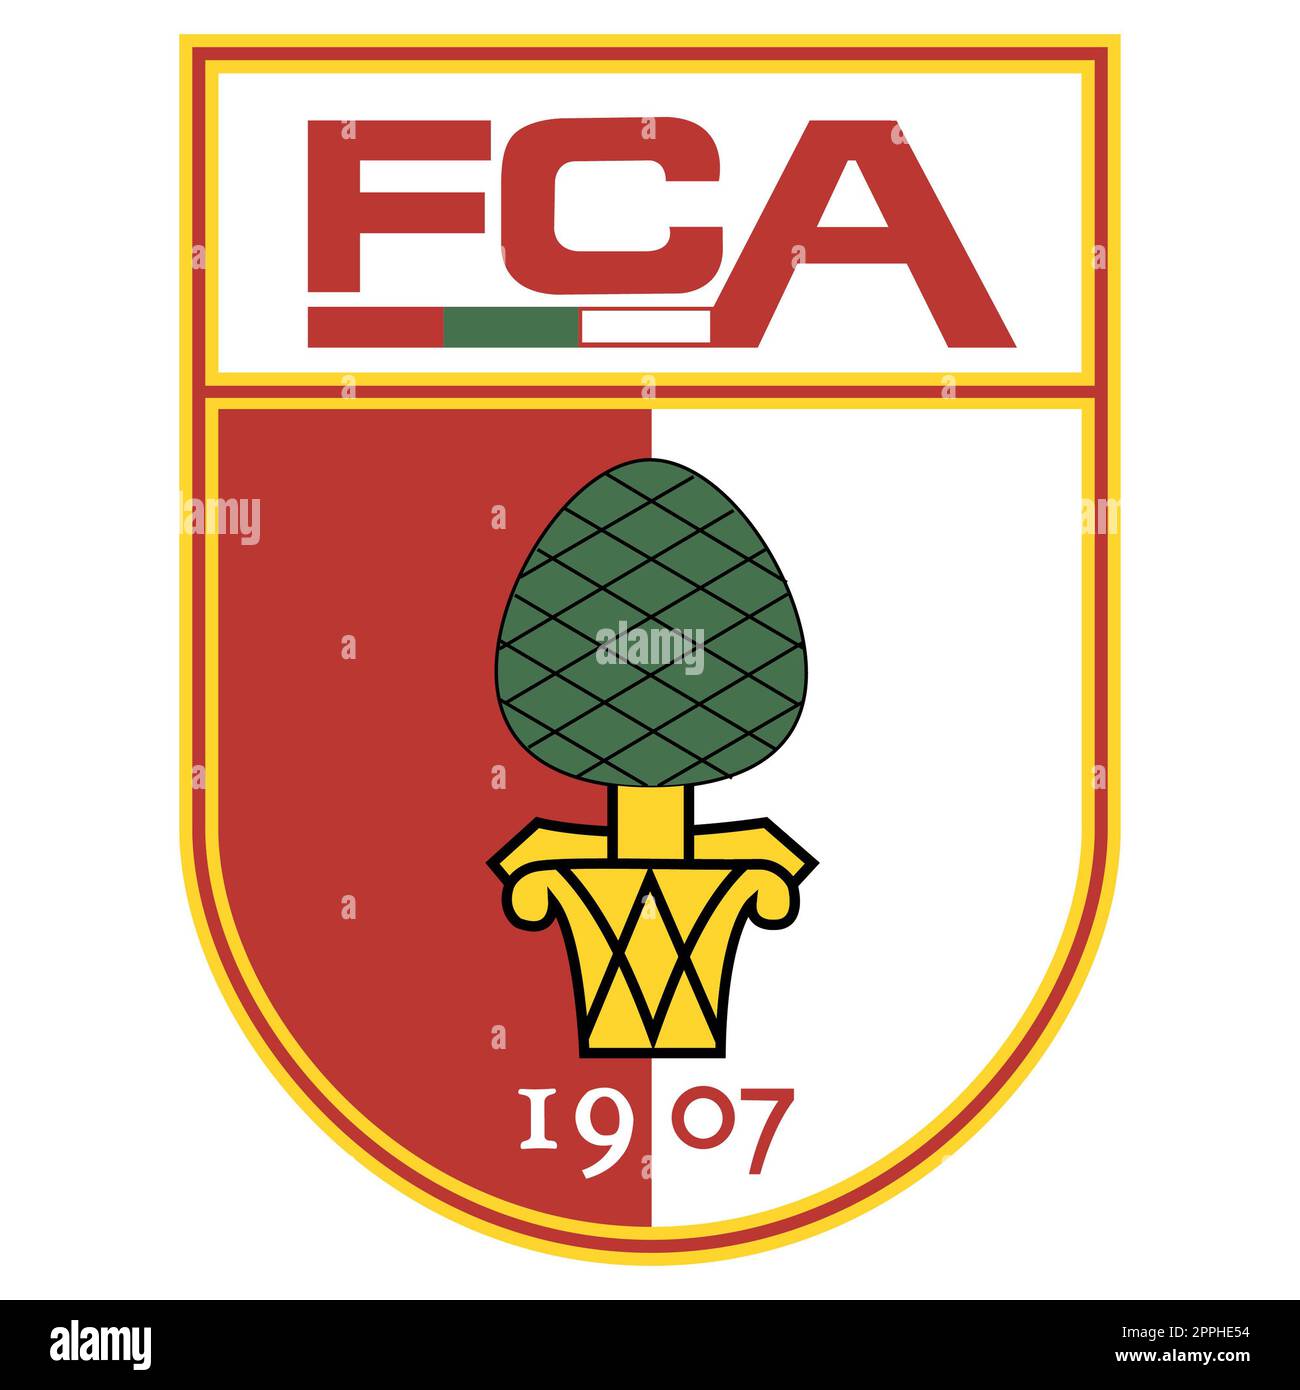 Francoforte sul meno, Germania - 10.23.2022 Logo della squadra di calcio tedesca Augsburg. Immagine vettoriale. Foto Stock